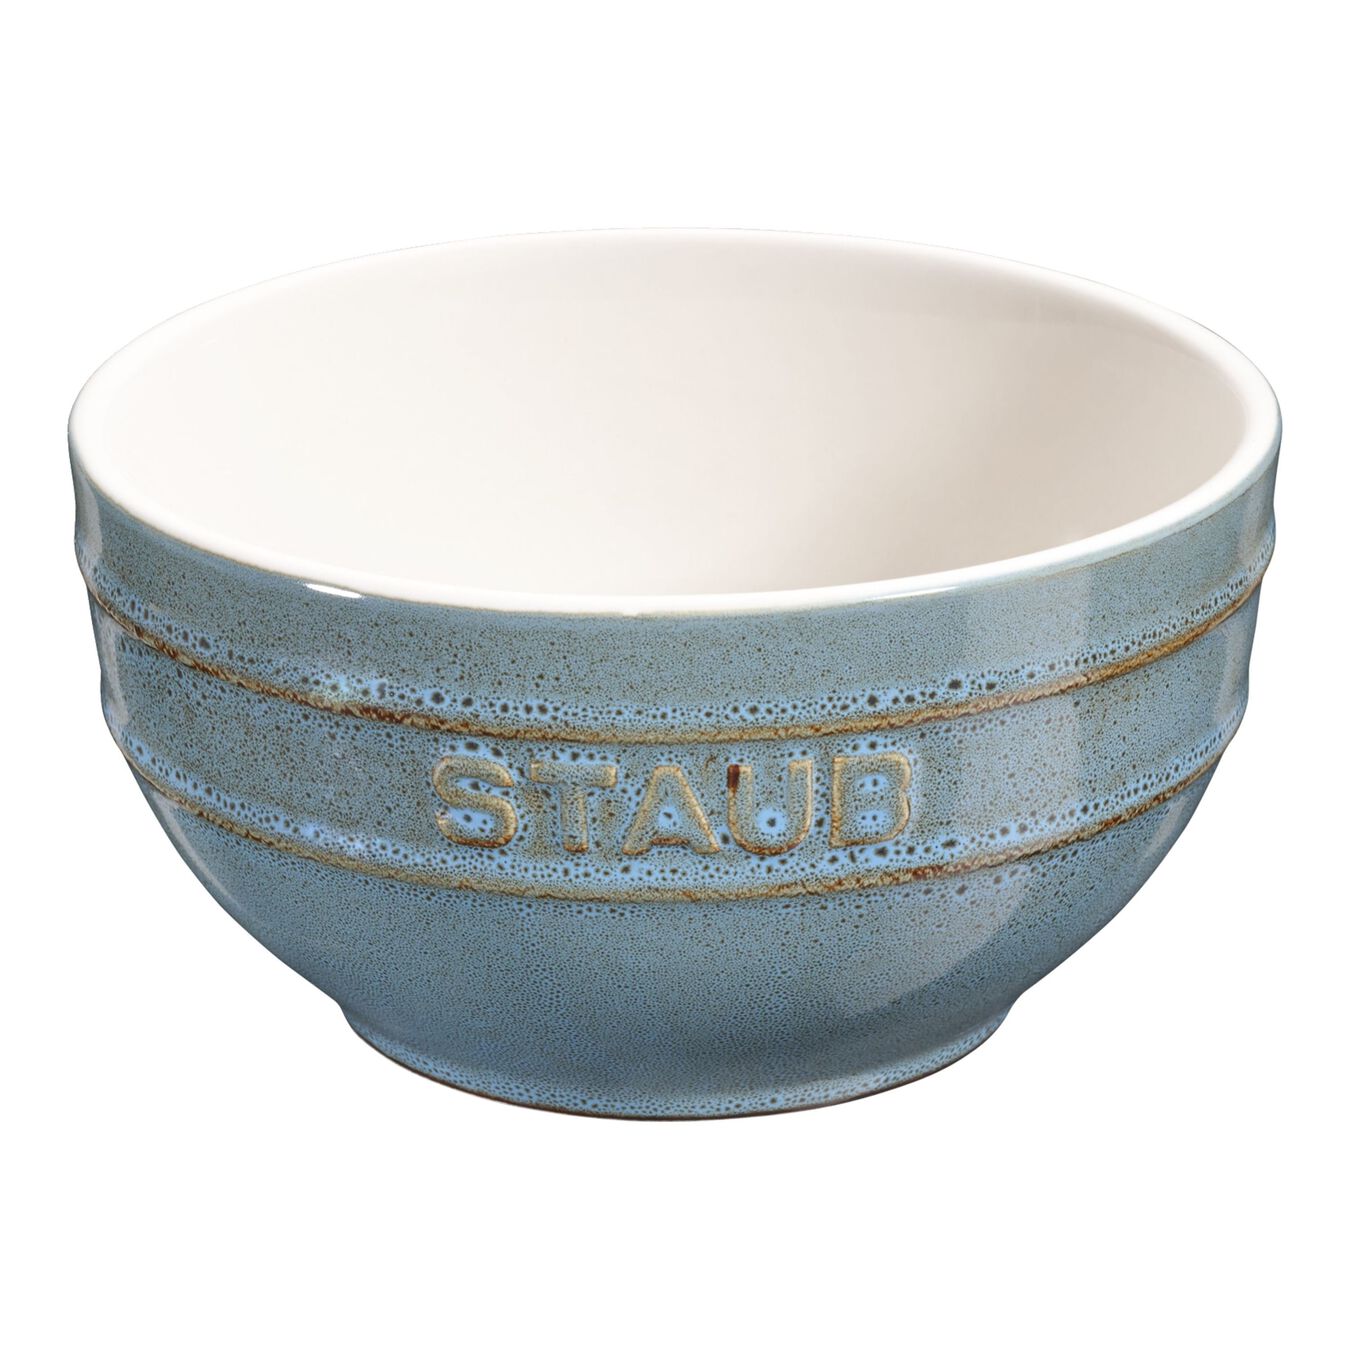 Schüssel 12 cm, Keramik, Antik-Türkis,,large 1